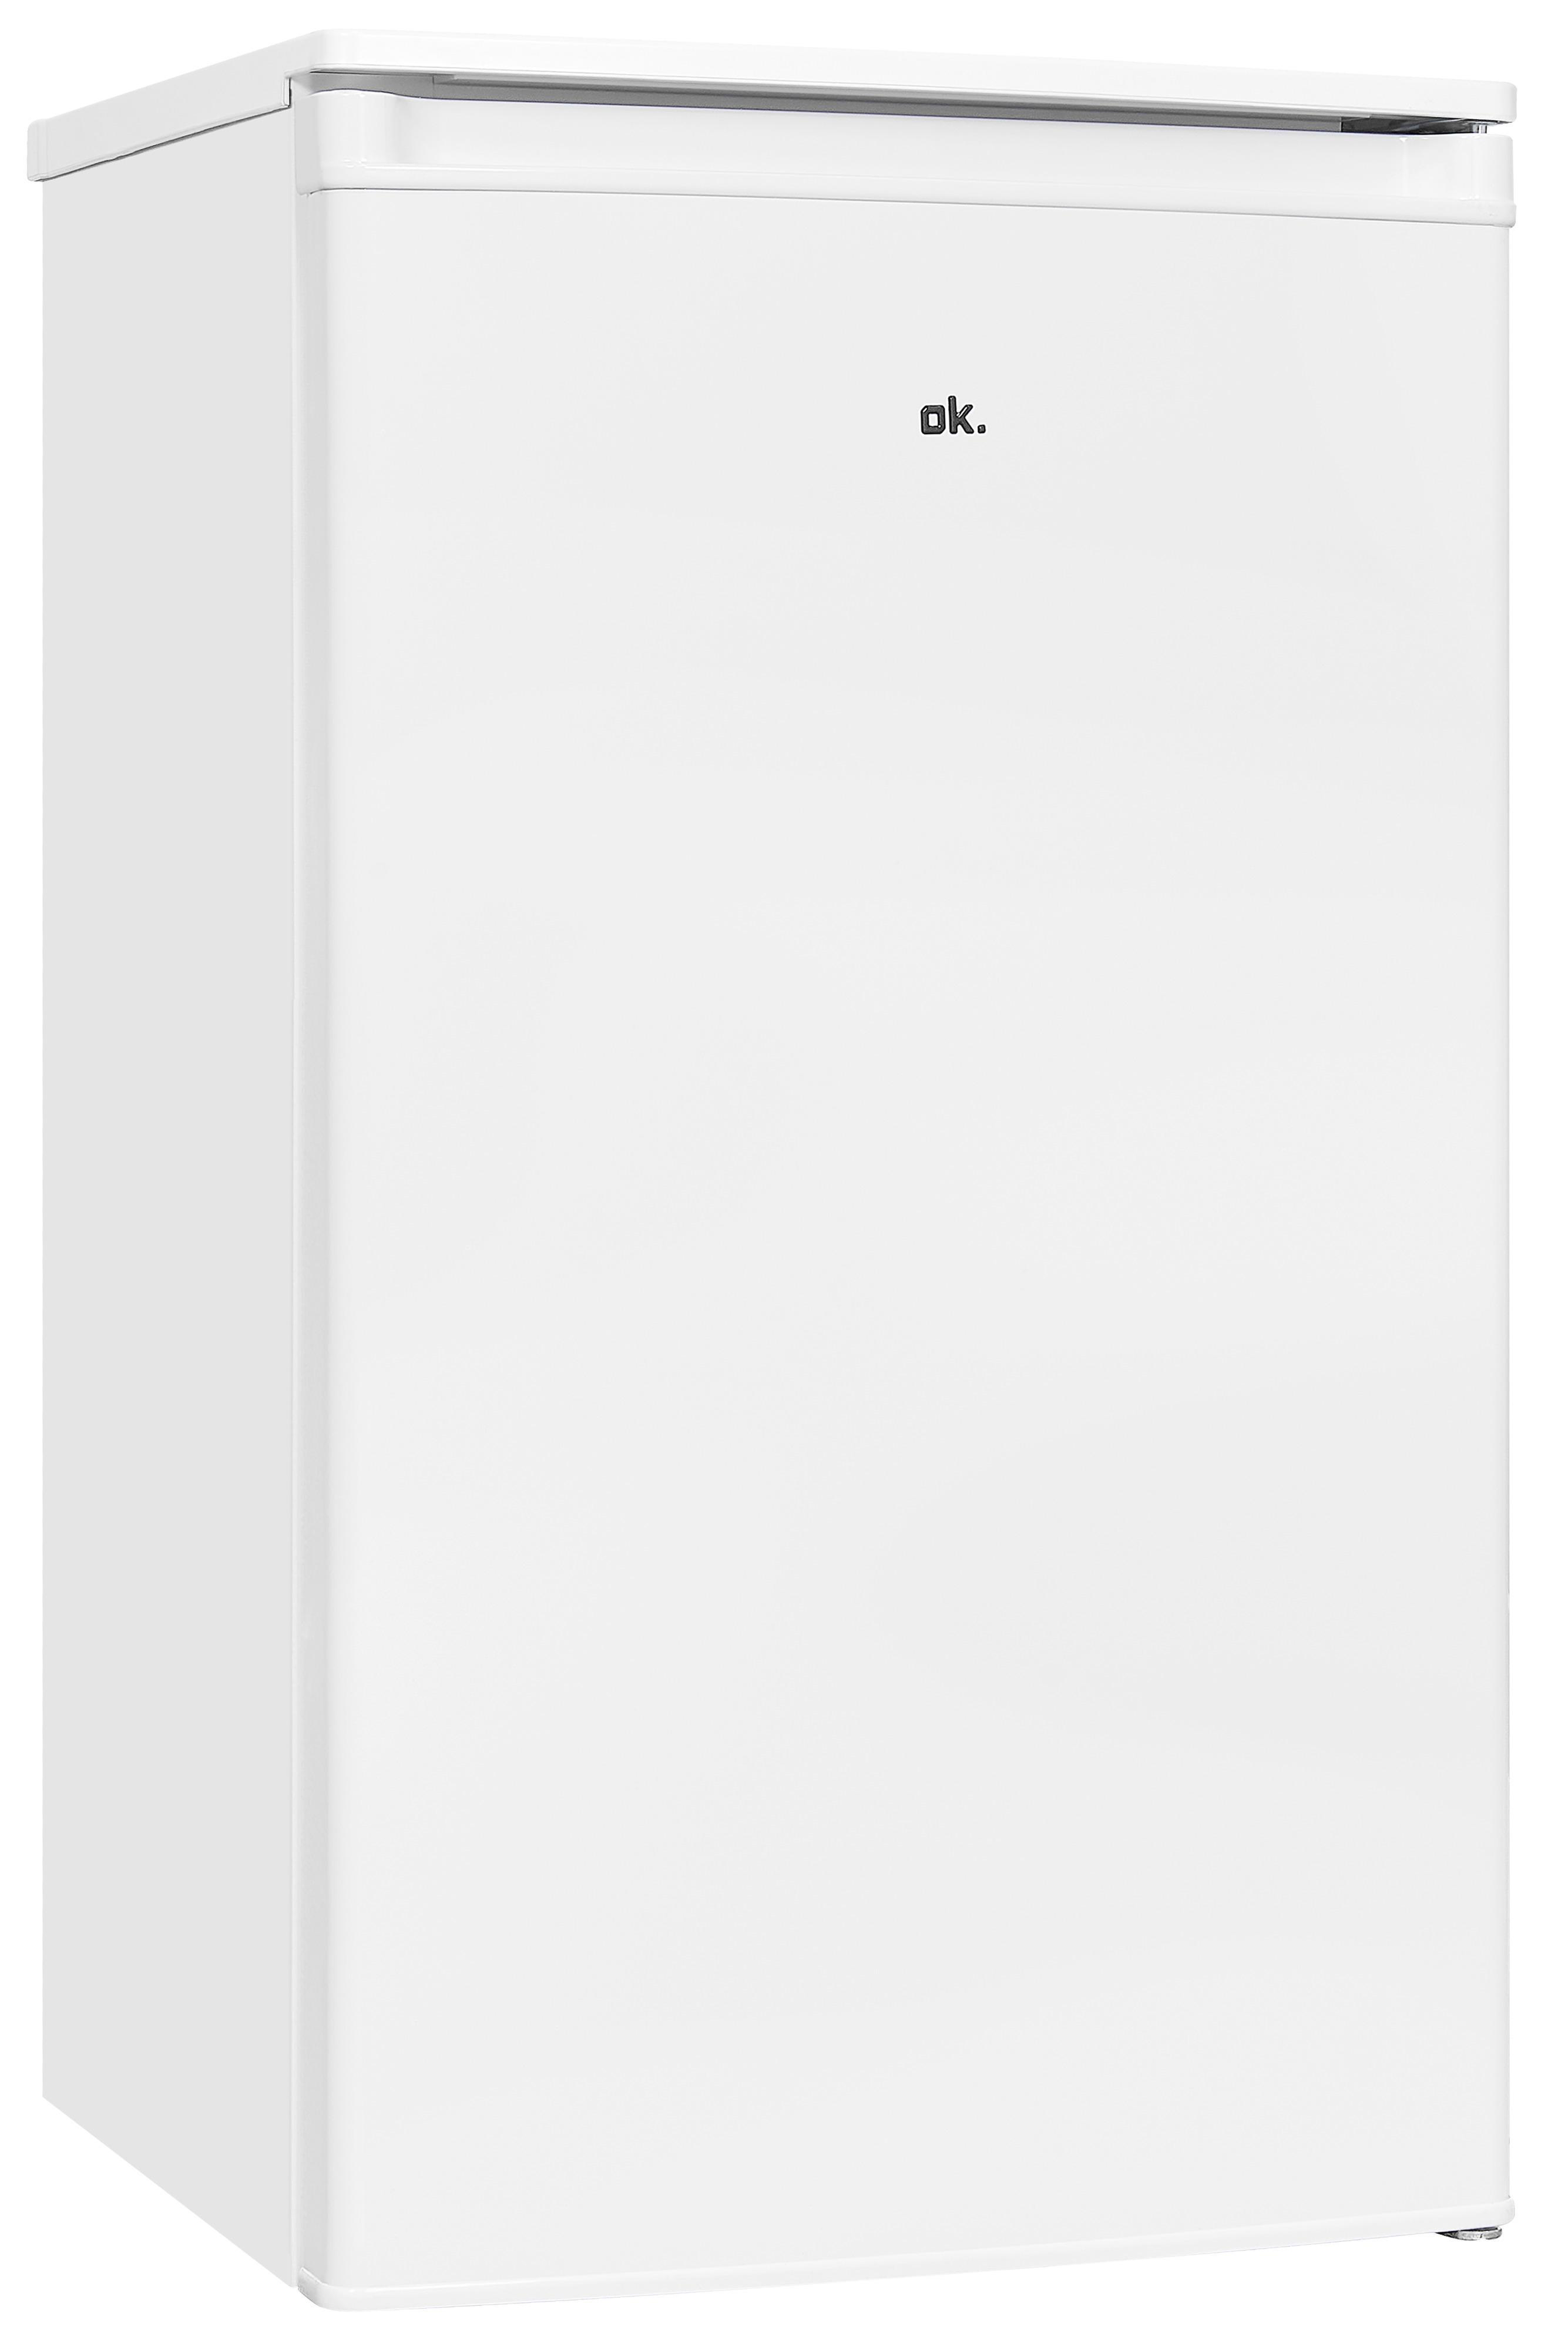 OK. OFR E (E, 111 hoch, Weiß) Kühlschrank 840 mm